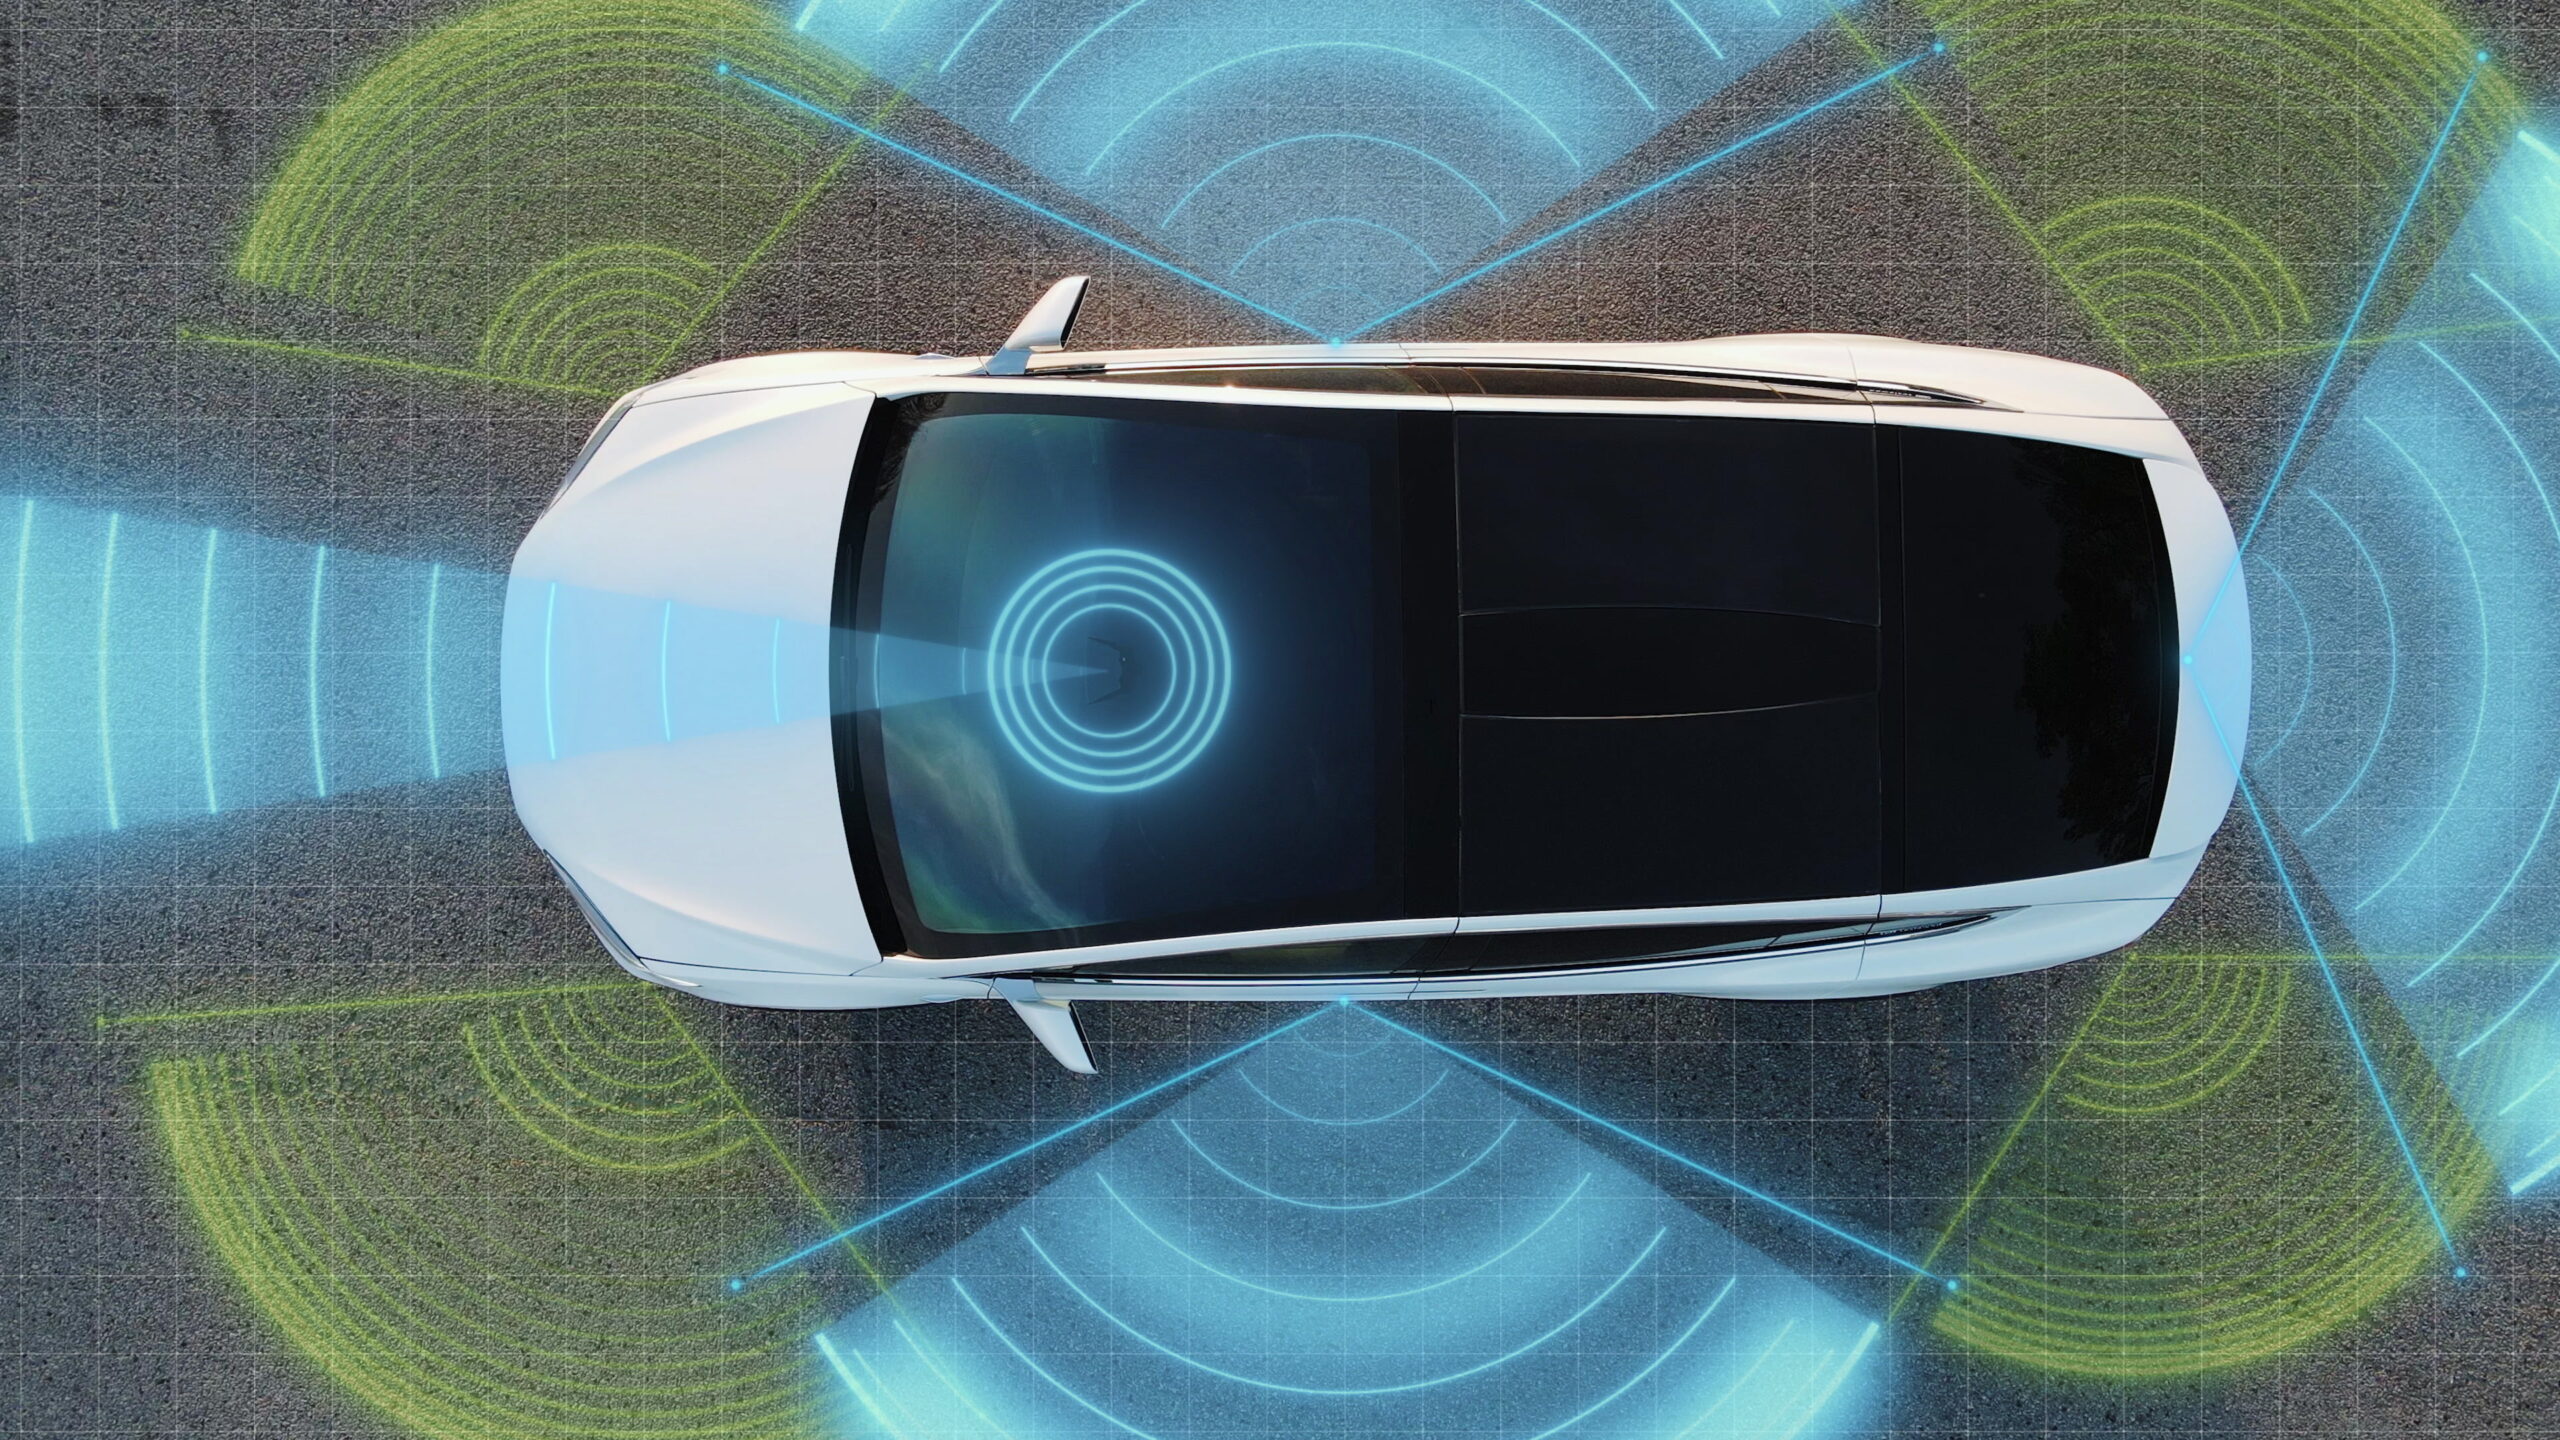 Công nghệ xe tự lái lái tự động, radar, 360, cảm biến, camera, laser. Trí tuệ nhân tạo số hóa và phân tích các con đường. Cảm biến quét phía trước để tìm phương tiện, mối nguy hiểm và giới hạn tốc độ